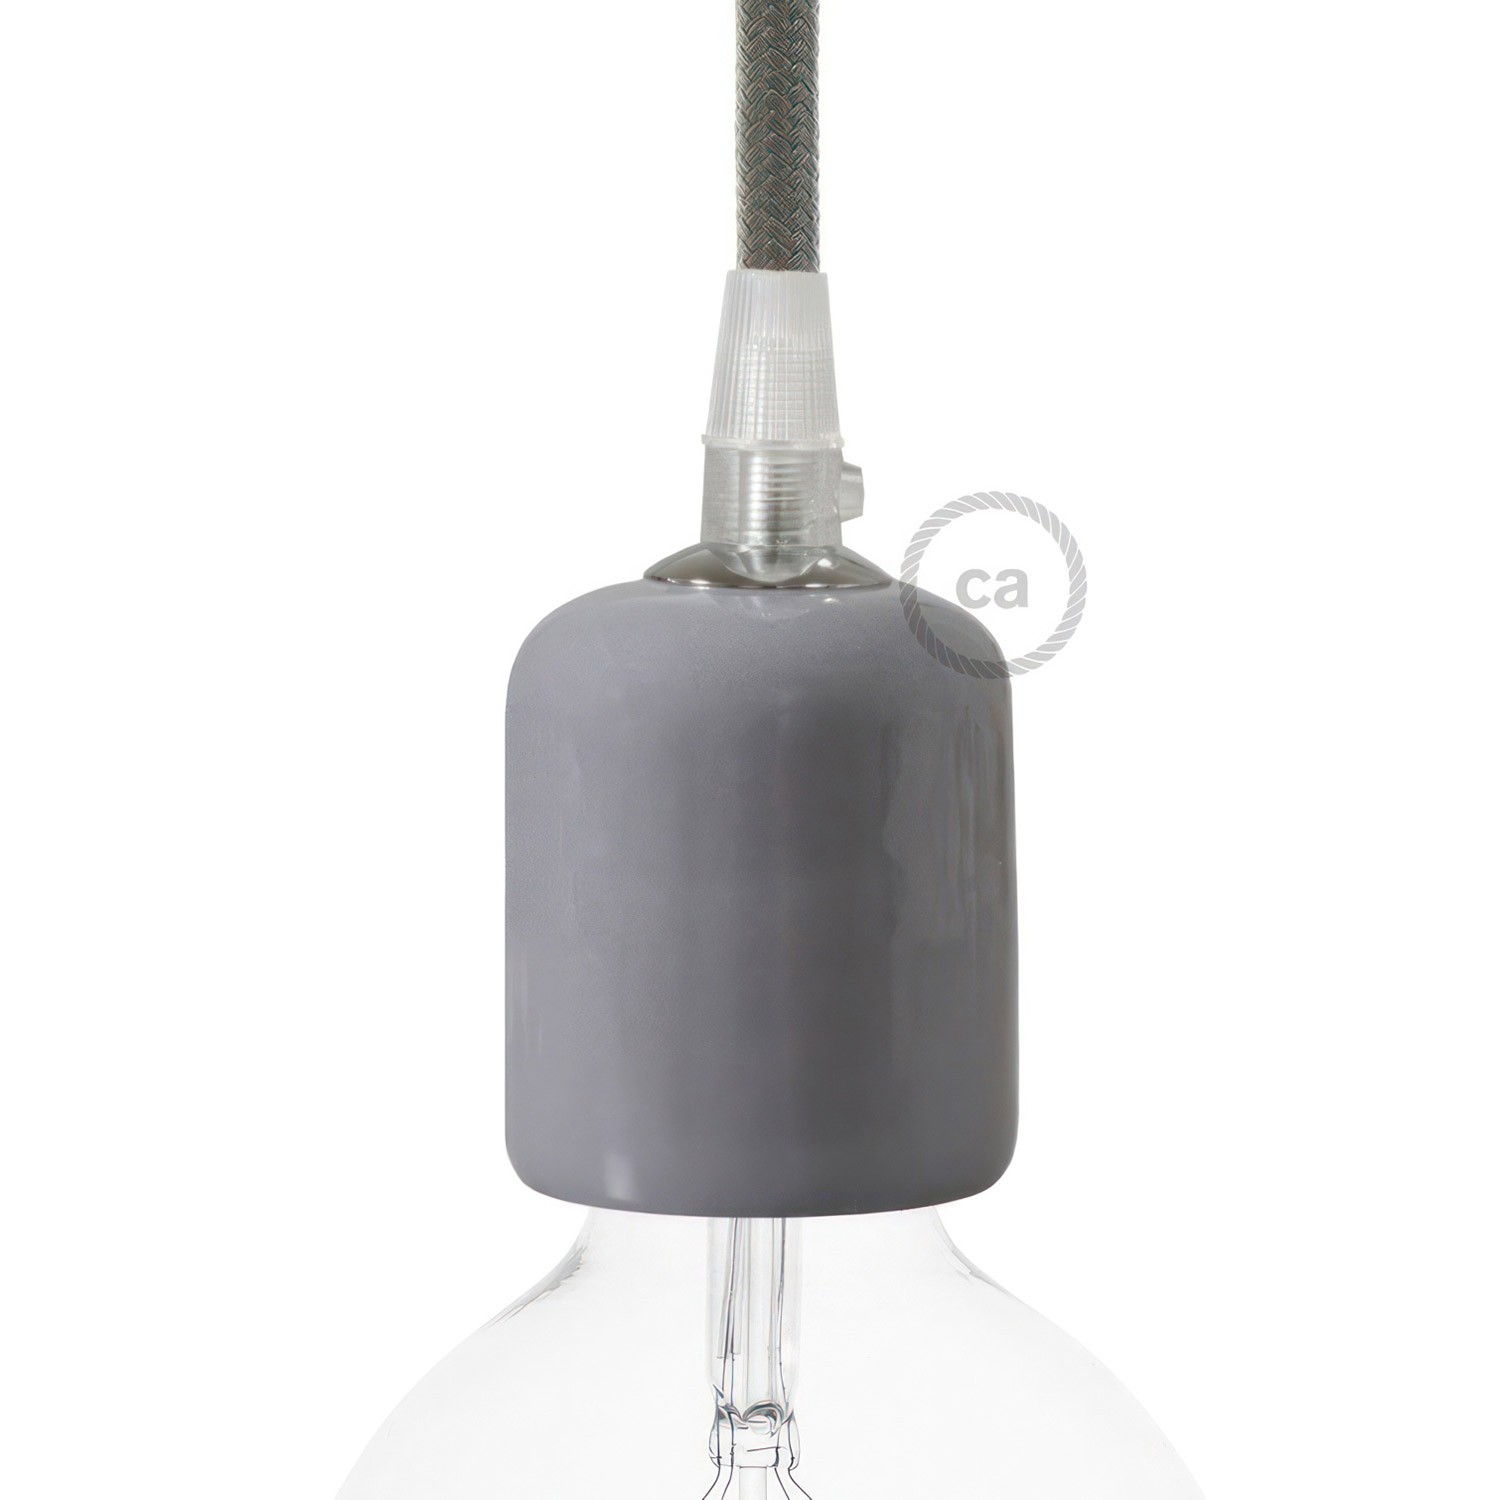 Kit lamphållare E27 i keramik